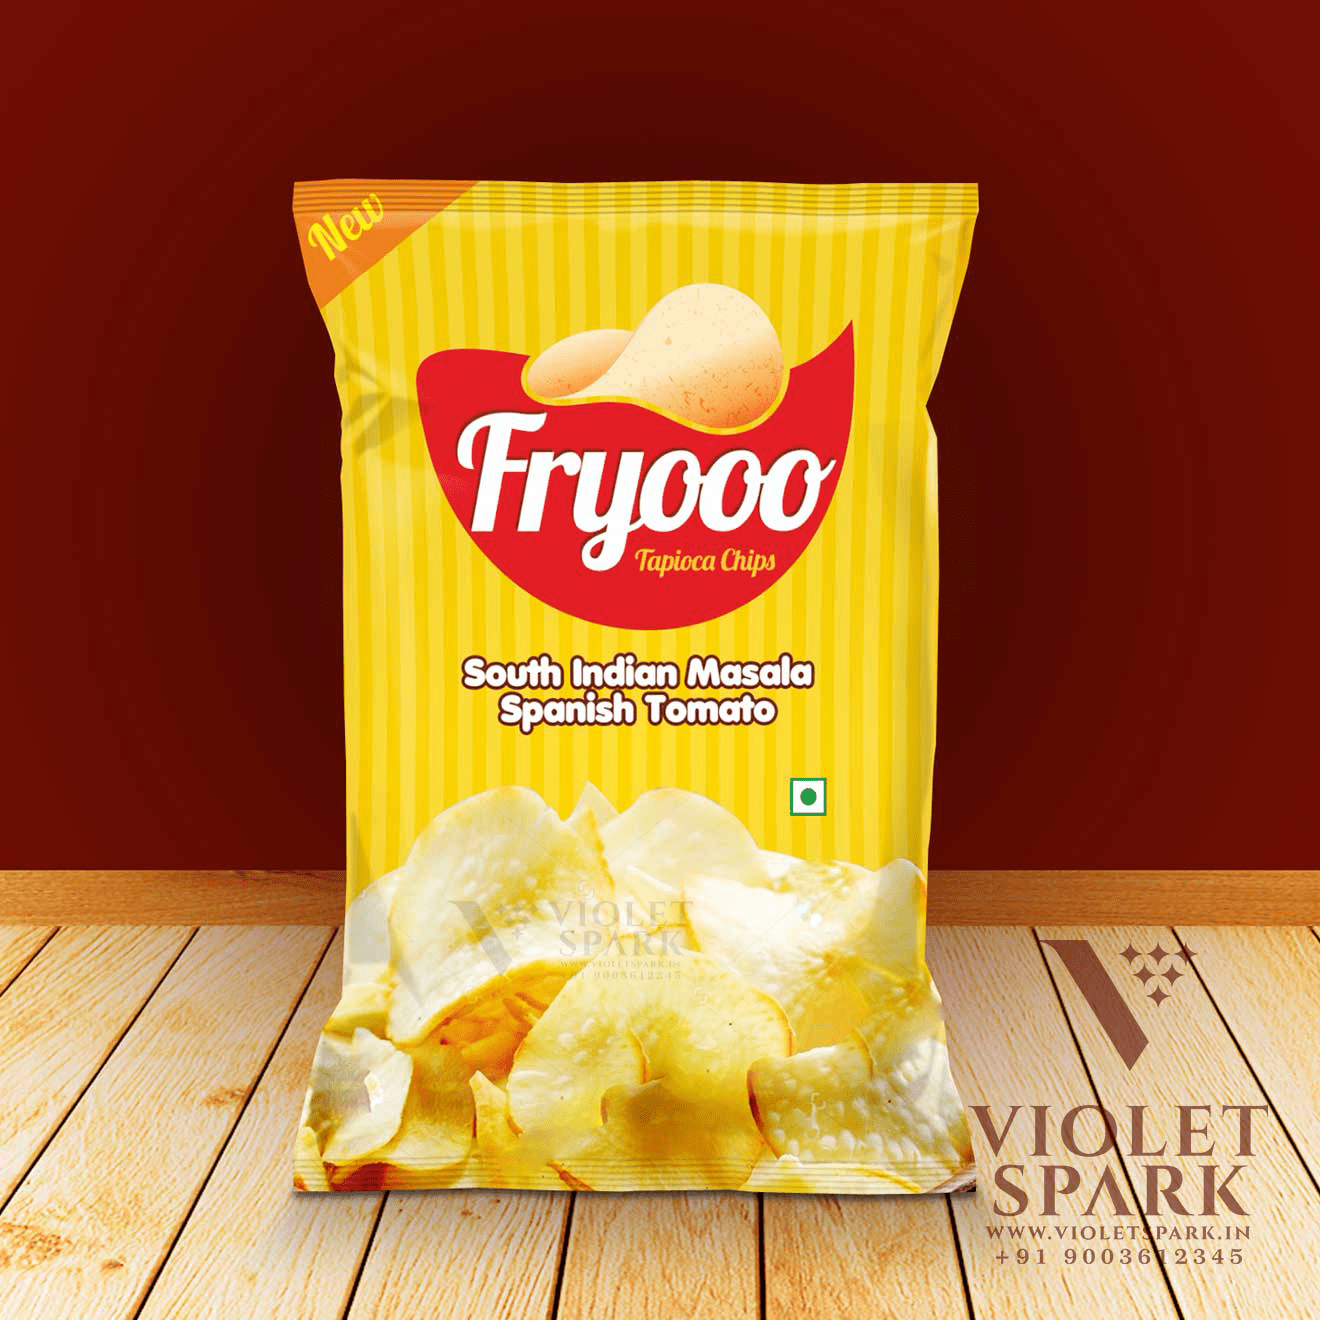 Fryooo Chips Branding & Packaging Design in Erode by Violet Spark